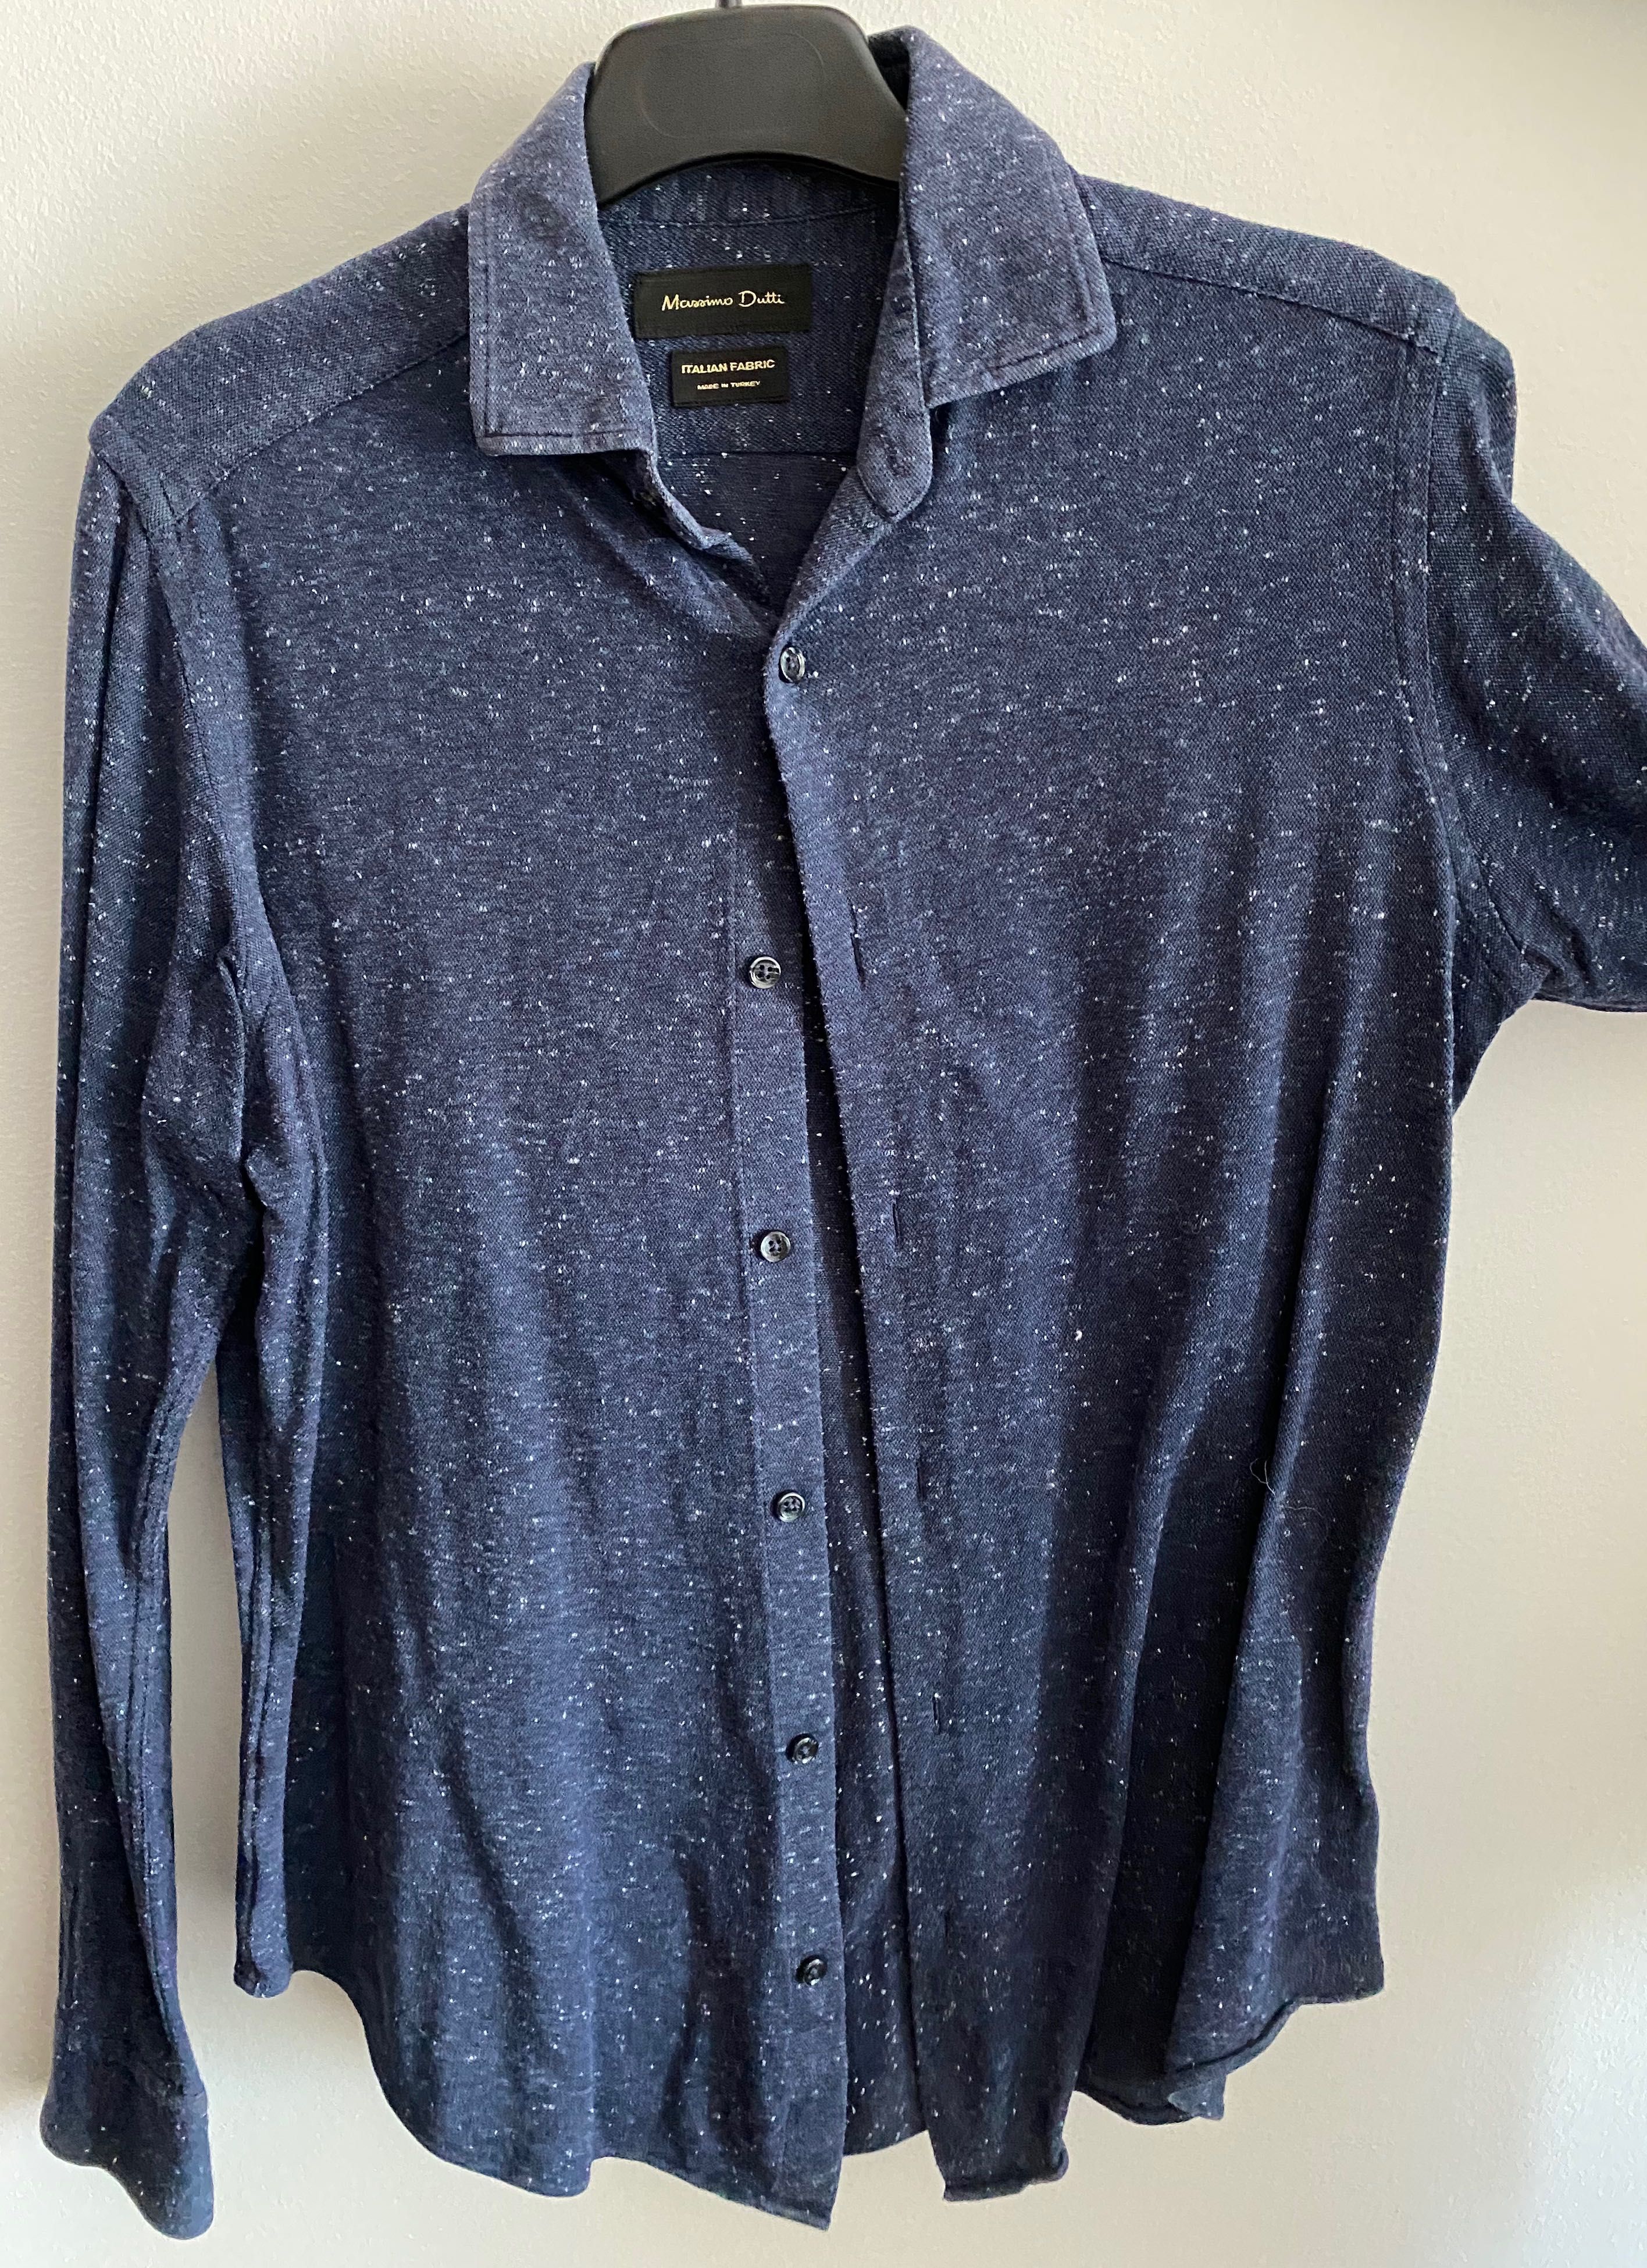 Camisa Massimo Dutti - azul escuro/branco